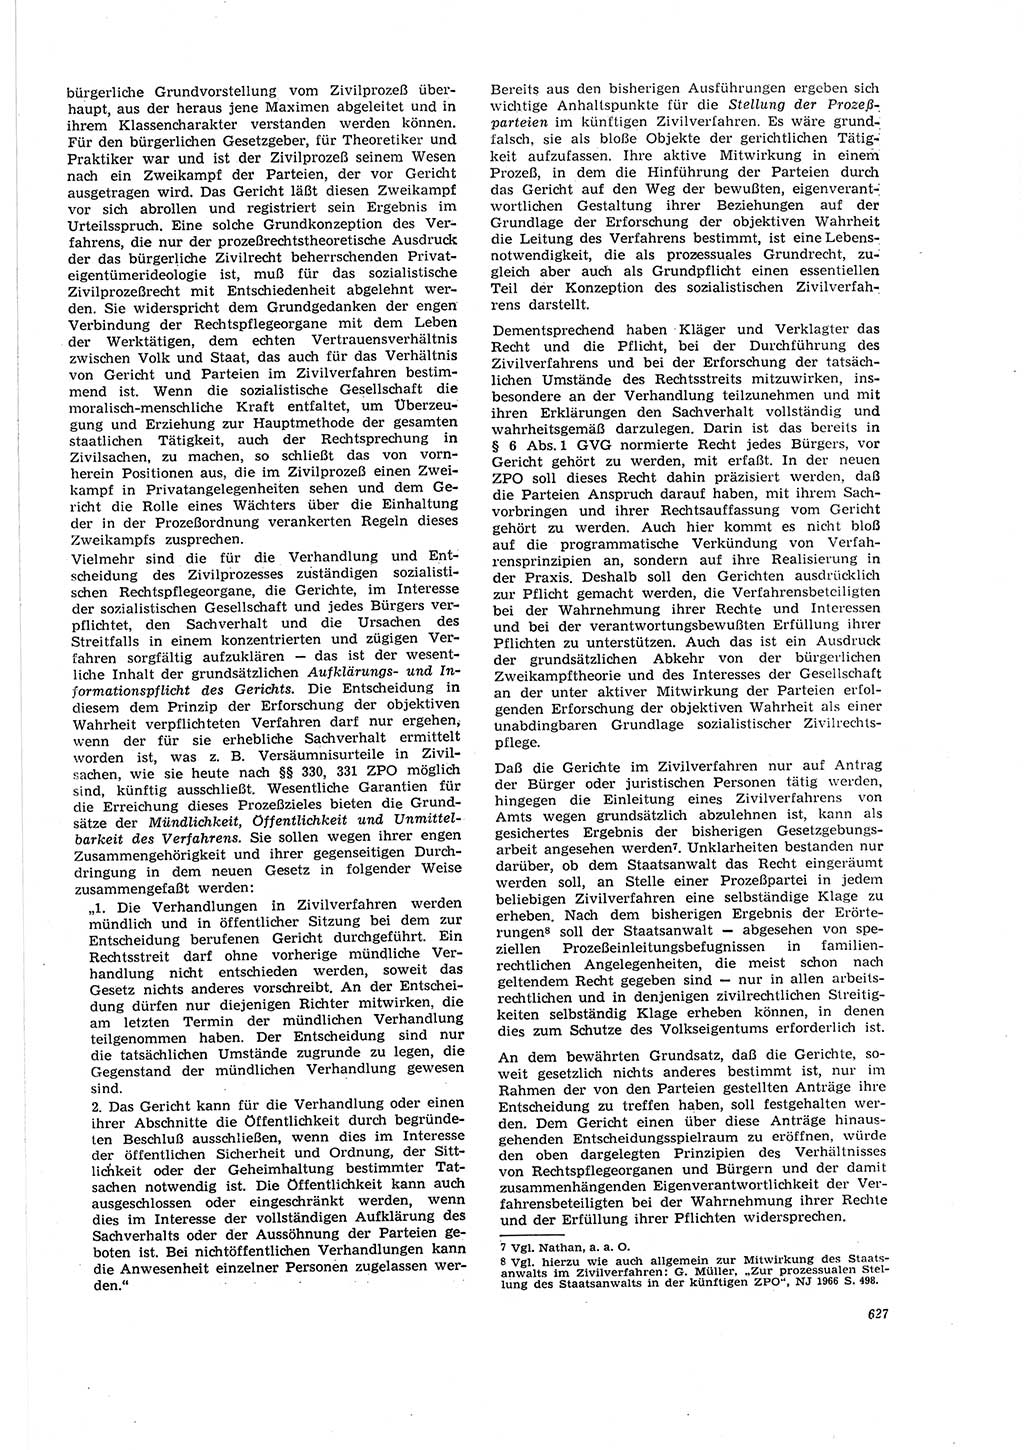 Neue Justiz (NJ), Zeitschrift für Recht und Rechtswissenschaft [Deutsche Demokratische Republik (DDR)], 20. Jahrgang 1966, Seite 627 (NJ DDR 1966, S. 627)